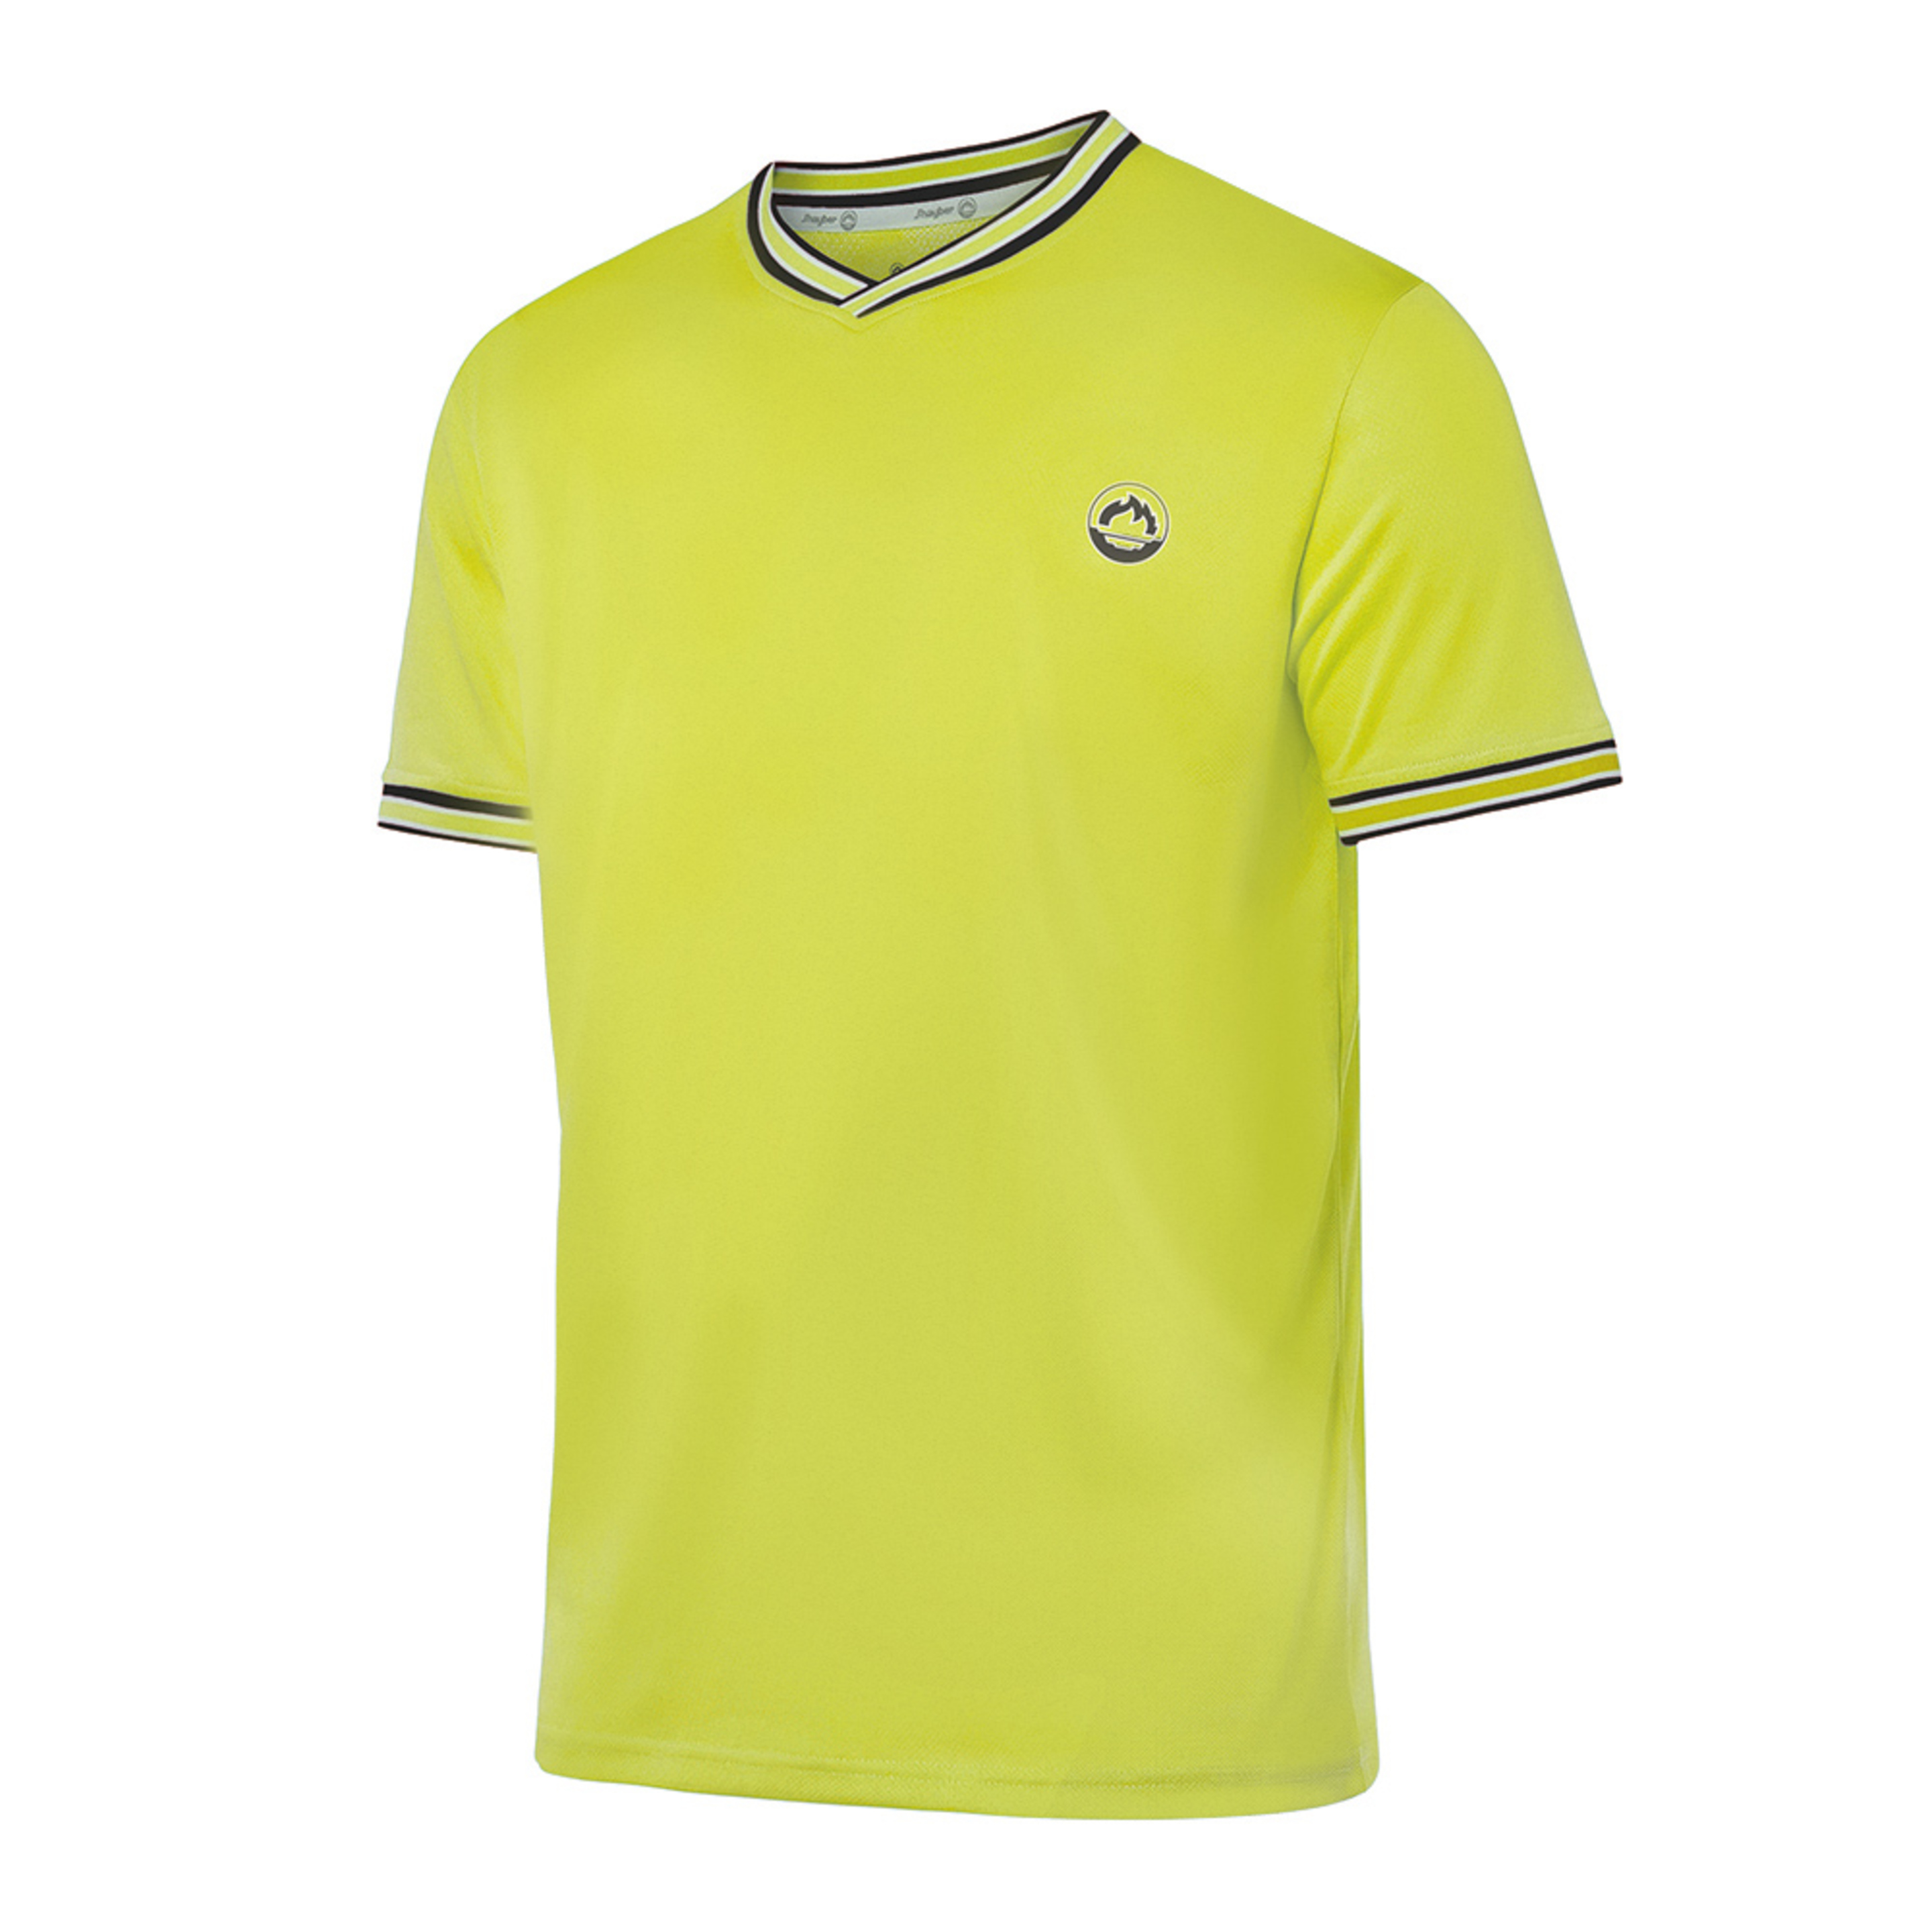 Jhayber T-shirt Da3225 - amarillo - 